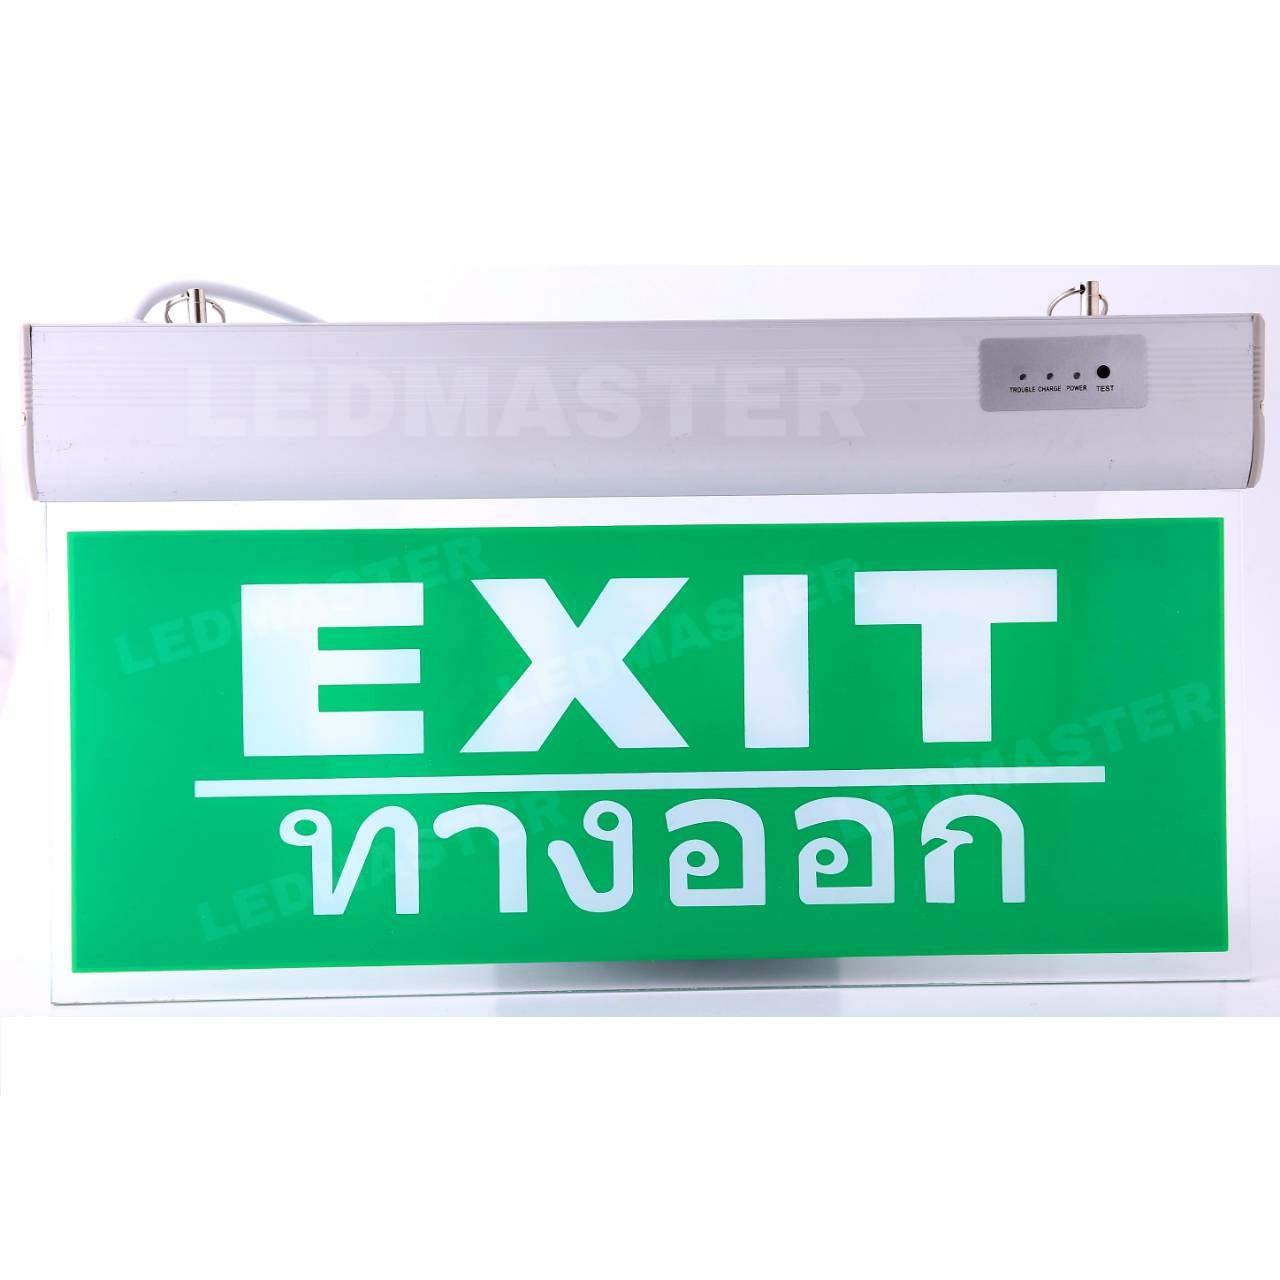 ป้ายทางออกหนีไฟ  ป้ายทางออก Exit ข้อความ Exit ทางออก ป้ายอะคริลิคพื้นสีเขียว ข้อความภาษาอังกษ สีขาว มาตรฐานความปลอดภัย ป้ายเตือนความปลอดภัยสำหรับติดตั้งบริเวณทางออกไปประตูหนีไฟ บันไดหนีไฟ สำรองไฟ 2 ชั่วโมงเมื่อเกิดไฟดับ ไฟตก อัคคีภัย